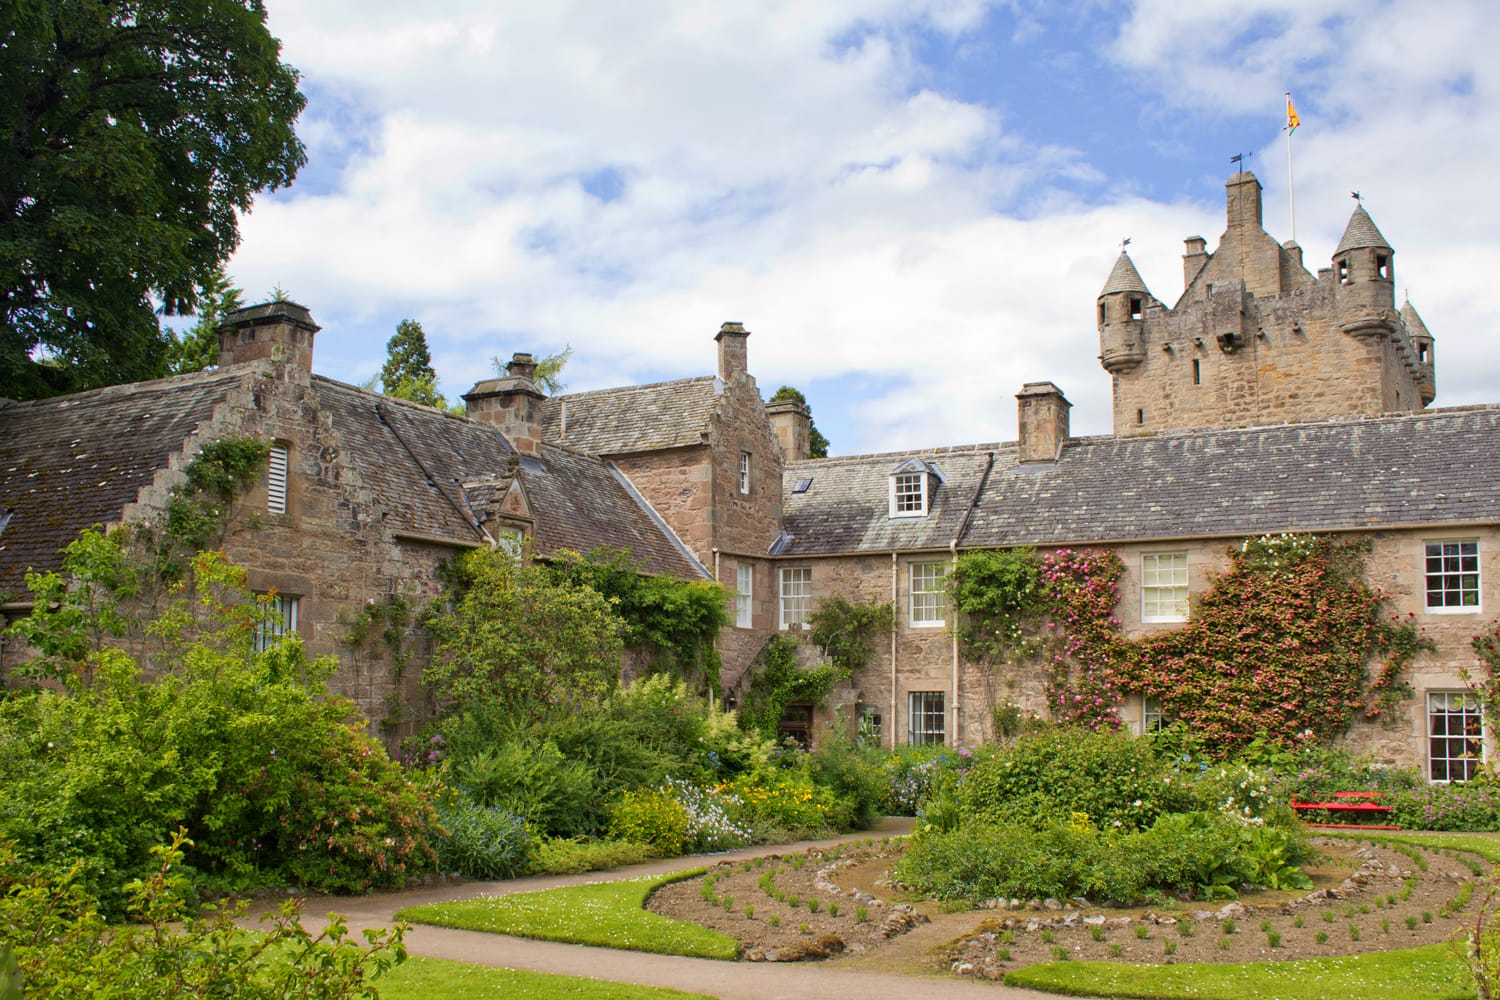 Cawdor Castle and gardens near Inverness, Scotland.